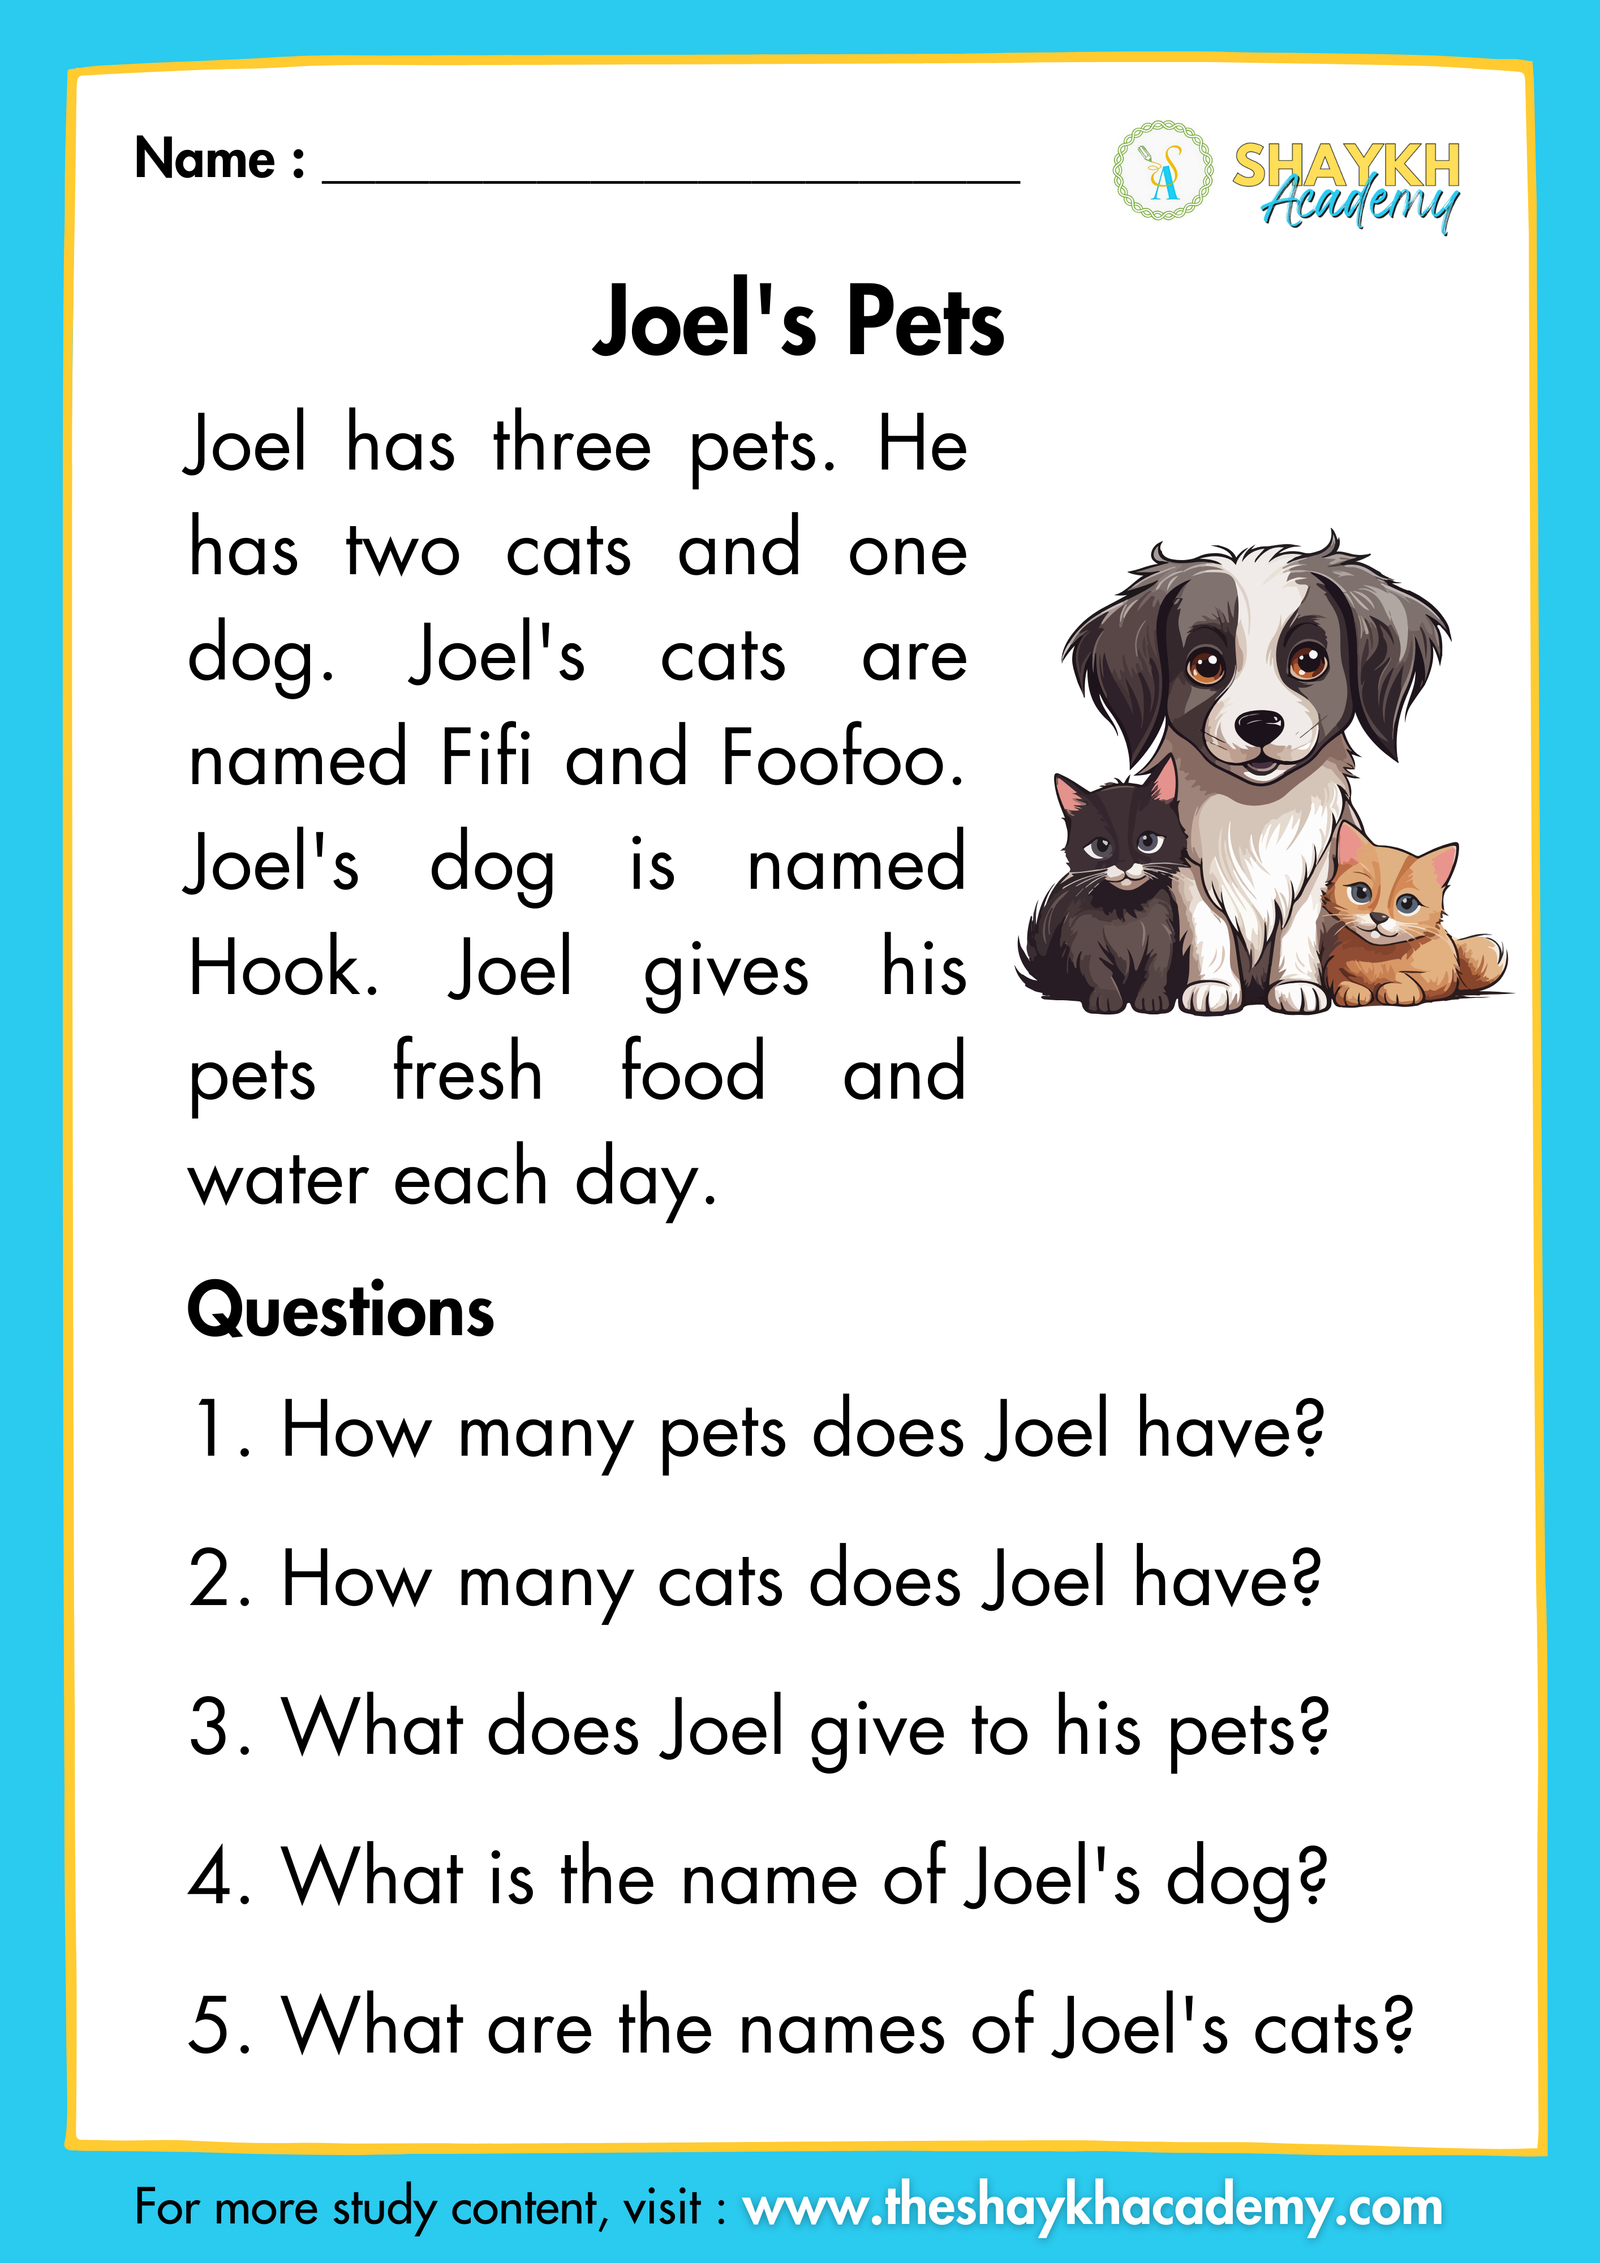 Joel's Pets